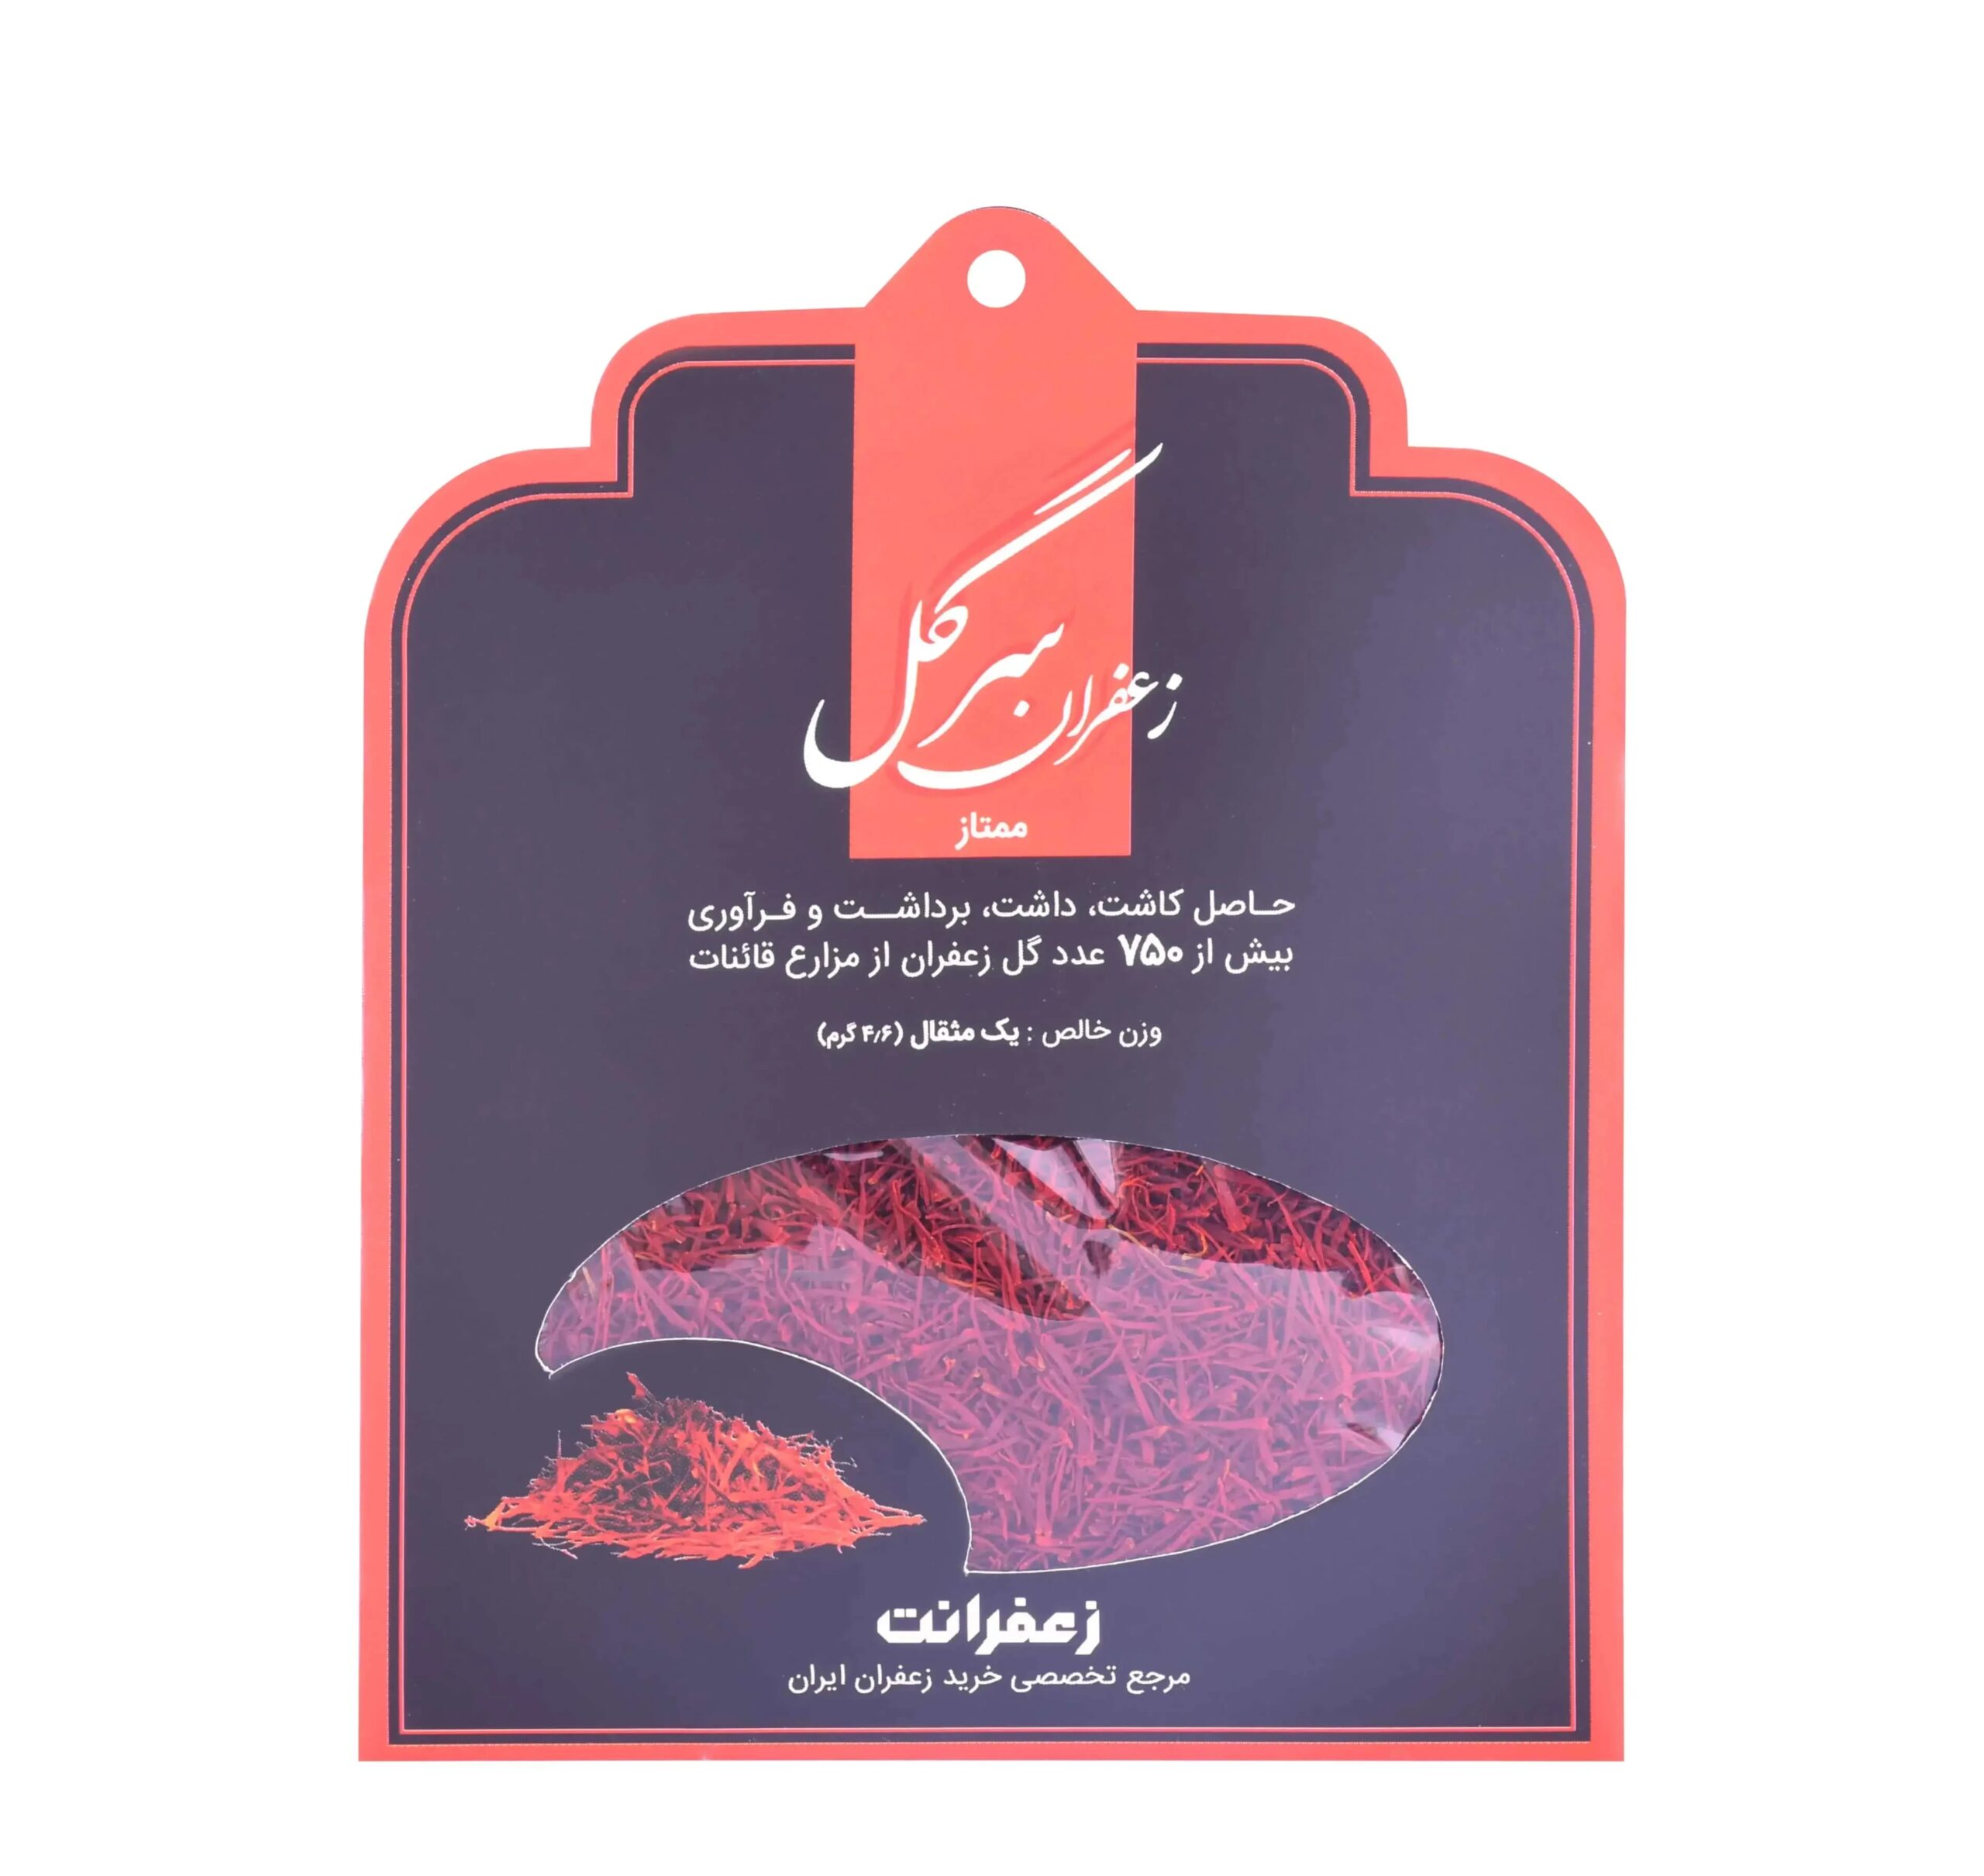 خرید زعفران از فروشگاه اینترنتی زعفرانت